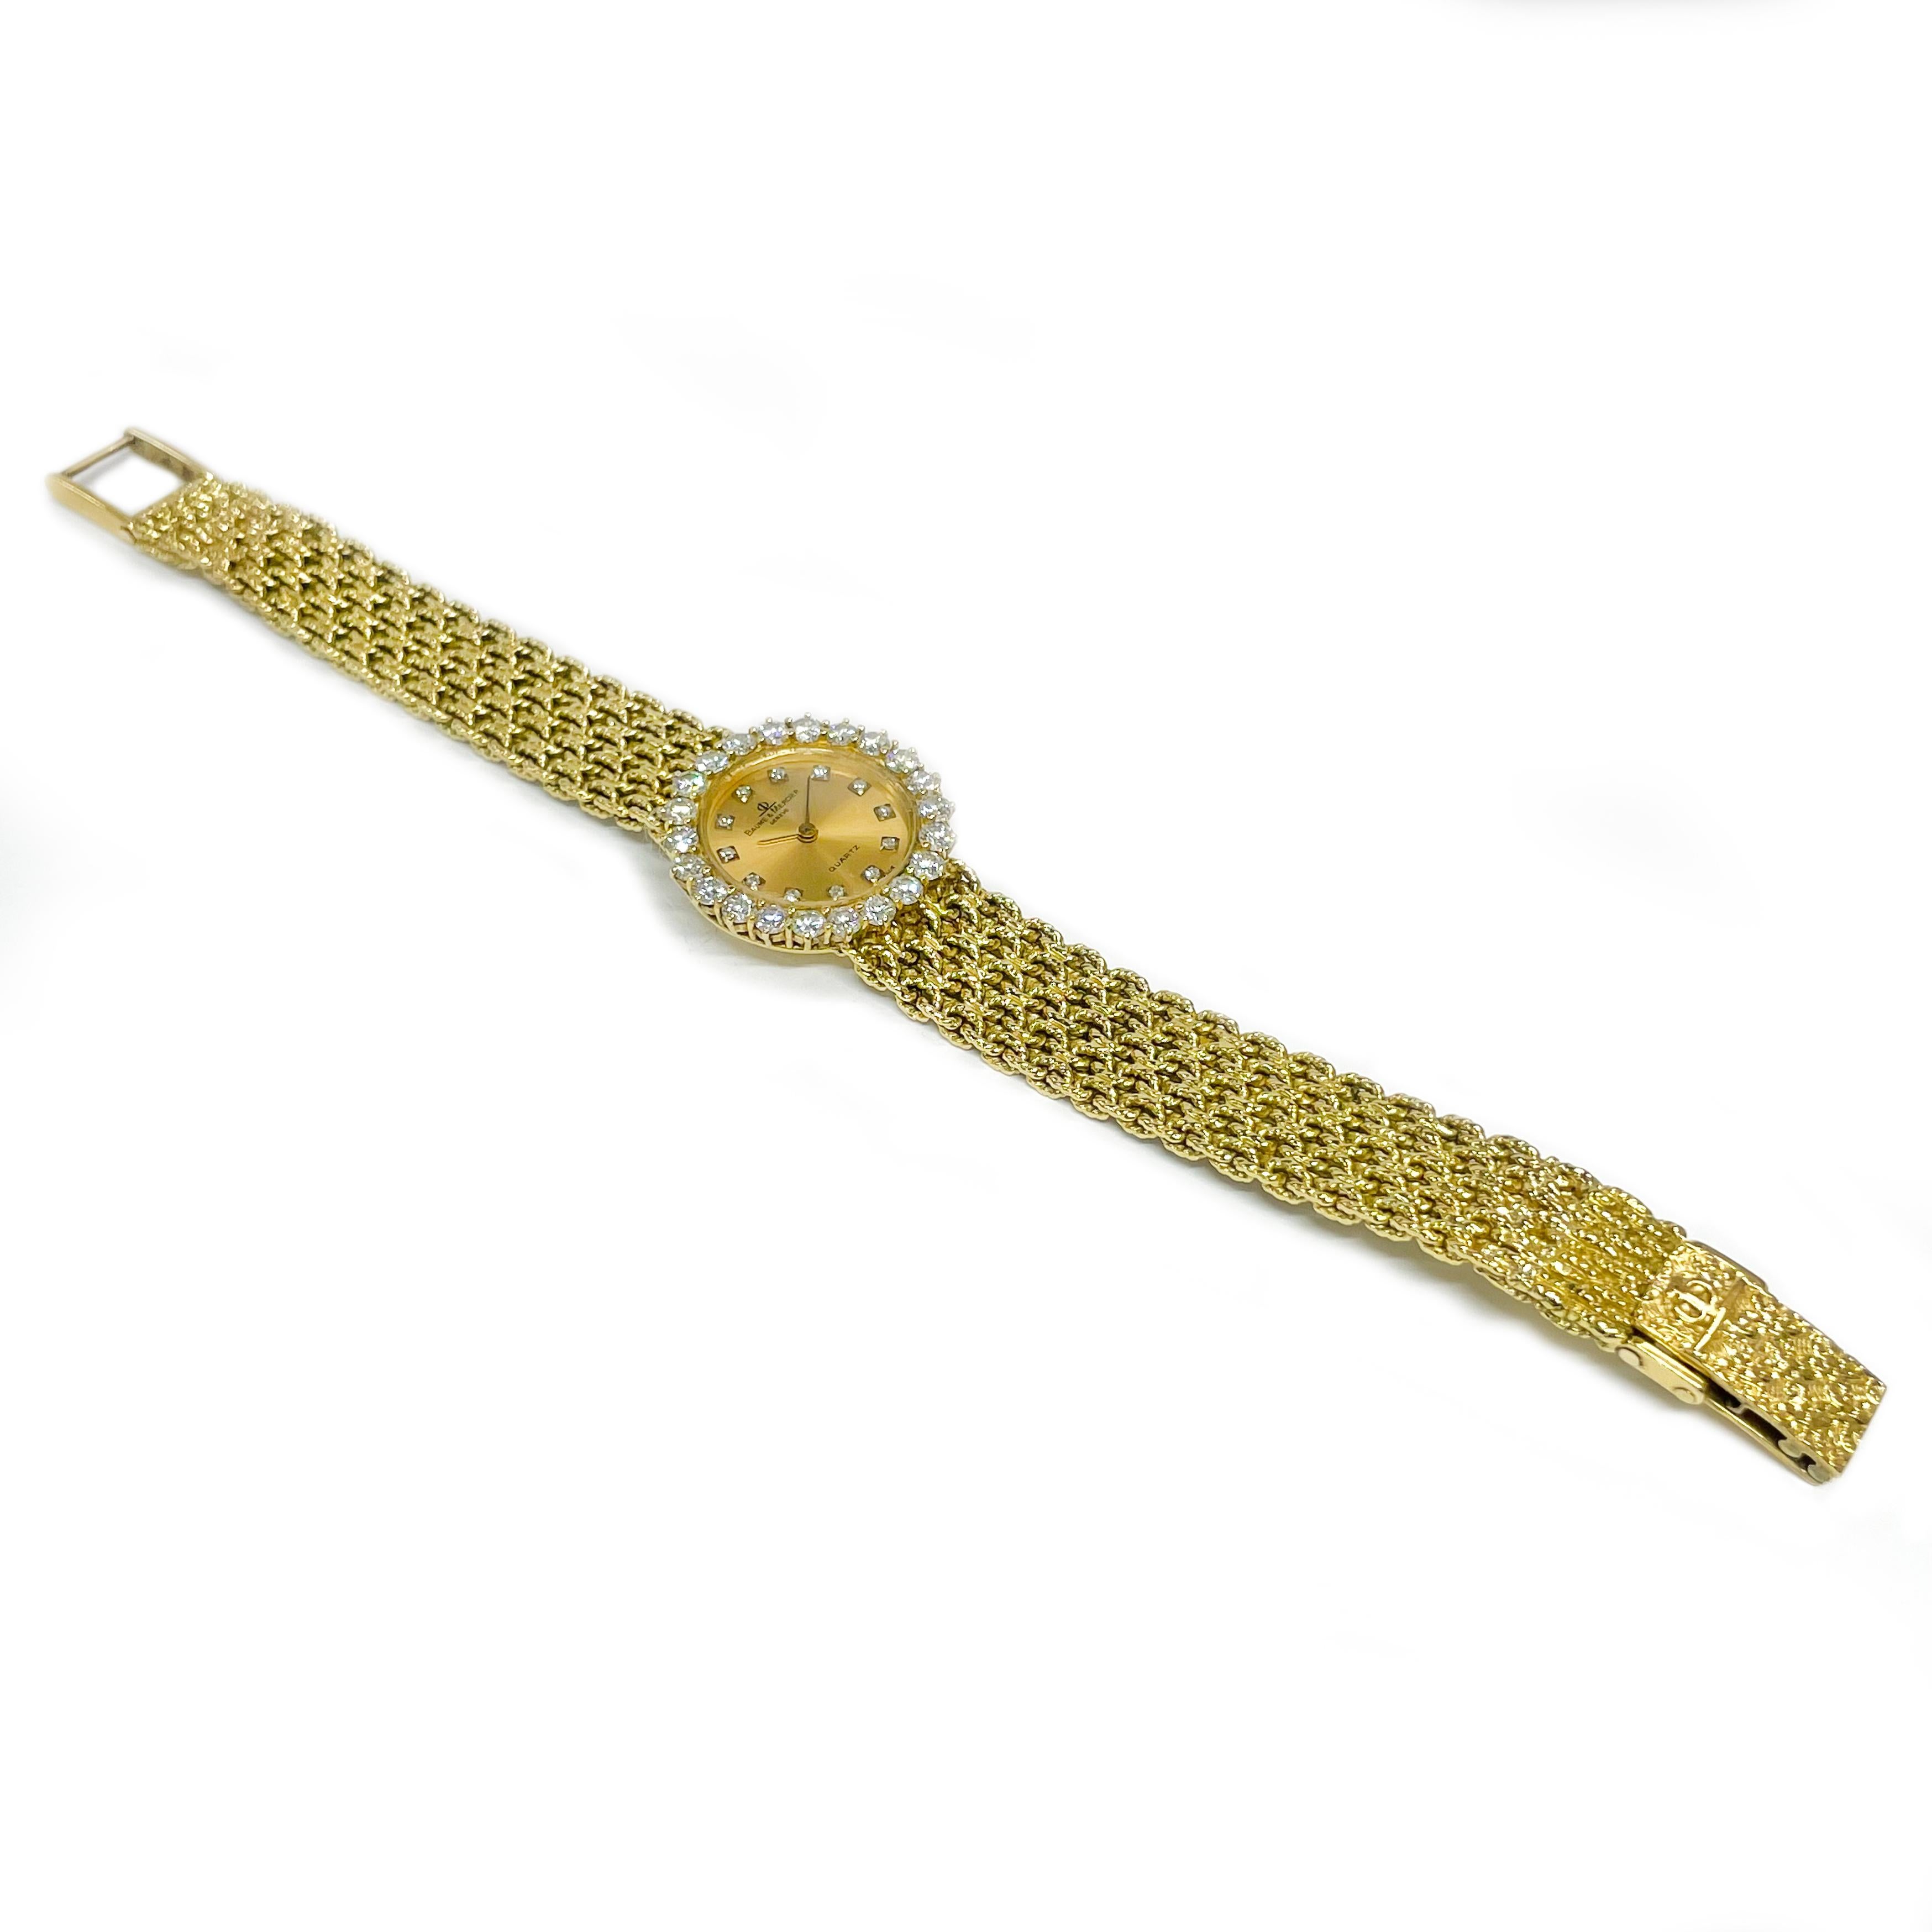 Baume & Mercier or jaune 18 carats diamant mouvement à quartz Montre-bracelet. La montre présente un cadran rond en or avec aiguilles des heures et des minutes et diamants ronds sertis à chaque heure. Vingt-deux diamants ronds de 3 mm, taillés en